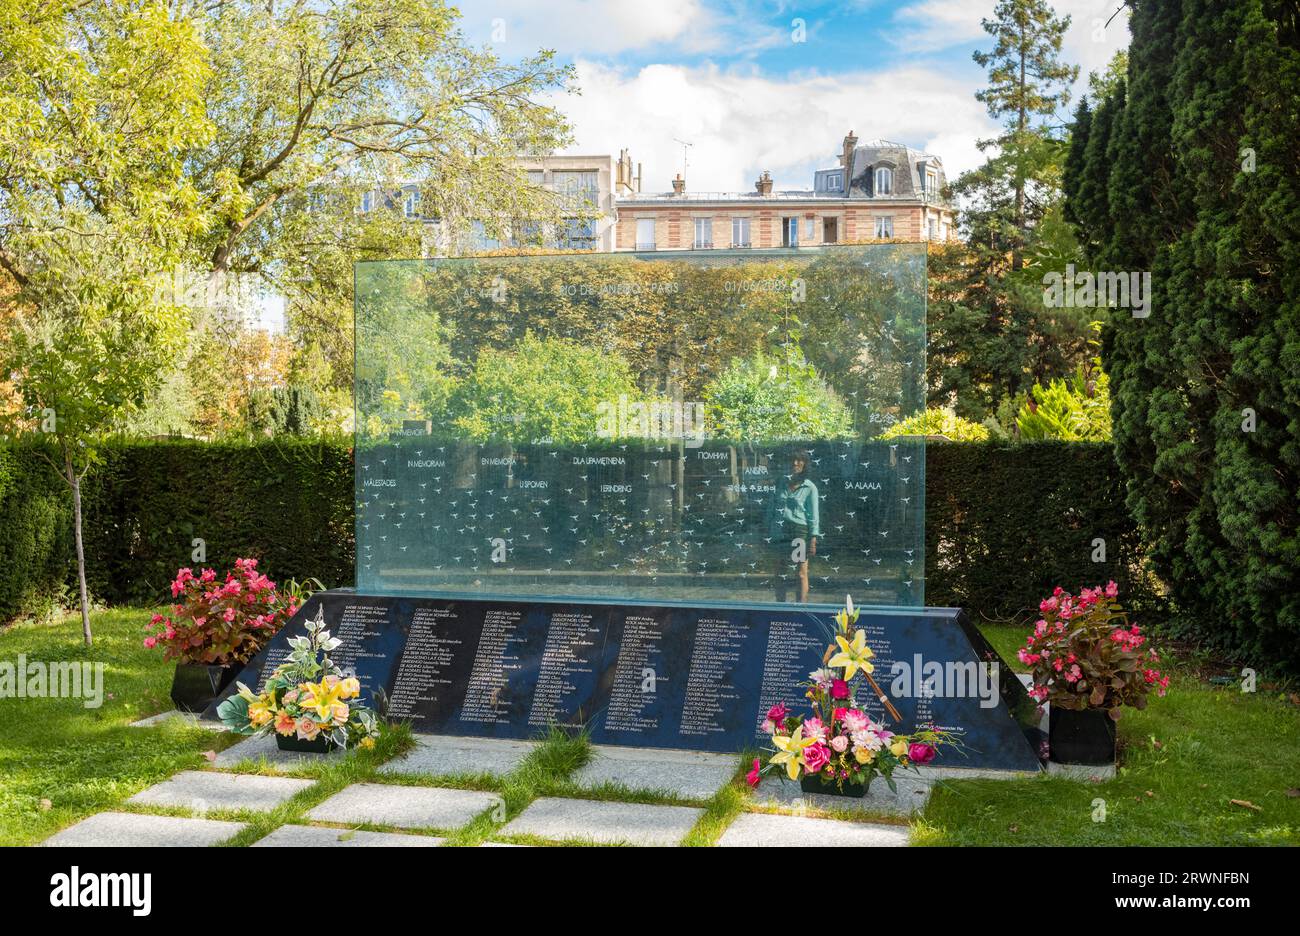 Eine Frau auf dem Friedhof Pere Lachaise in Paris, Frankreich, blickt auf die Gedenkstätte für die 228 Opfer des Air France-Fluges AF447, der im Atlant abstürzte Stockfoto